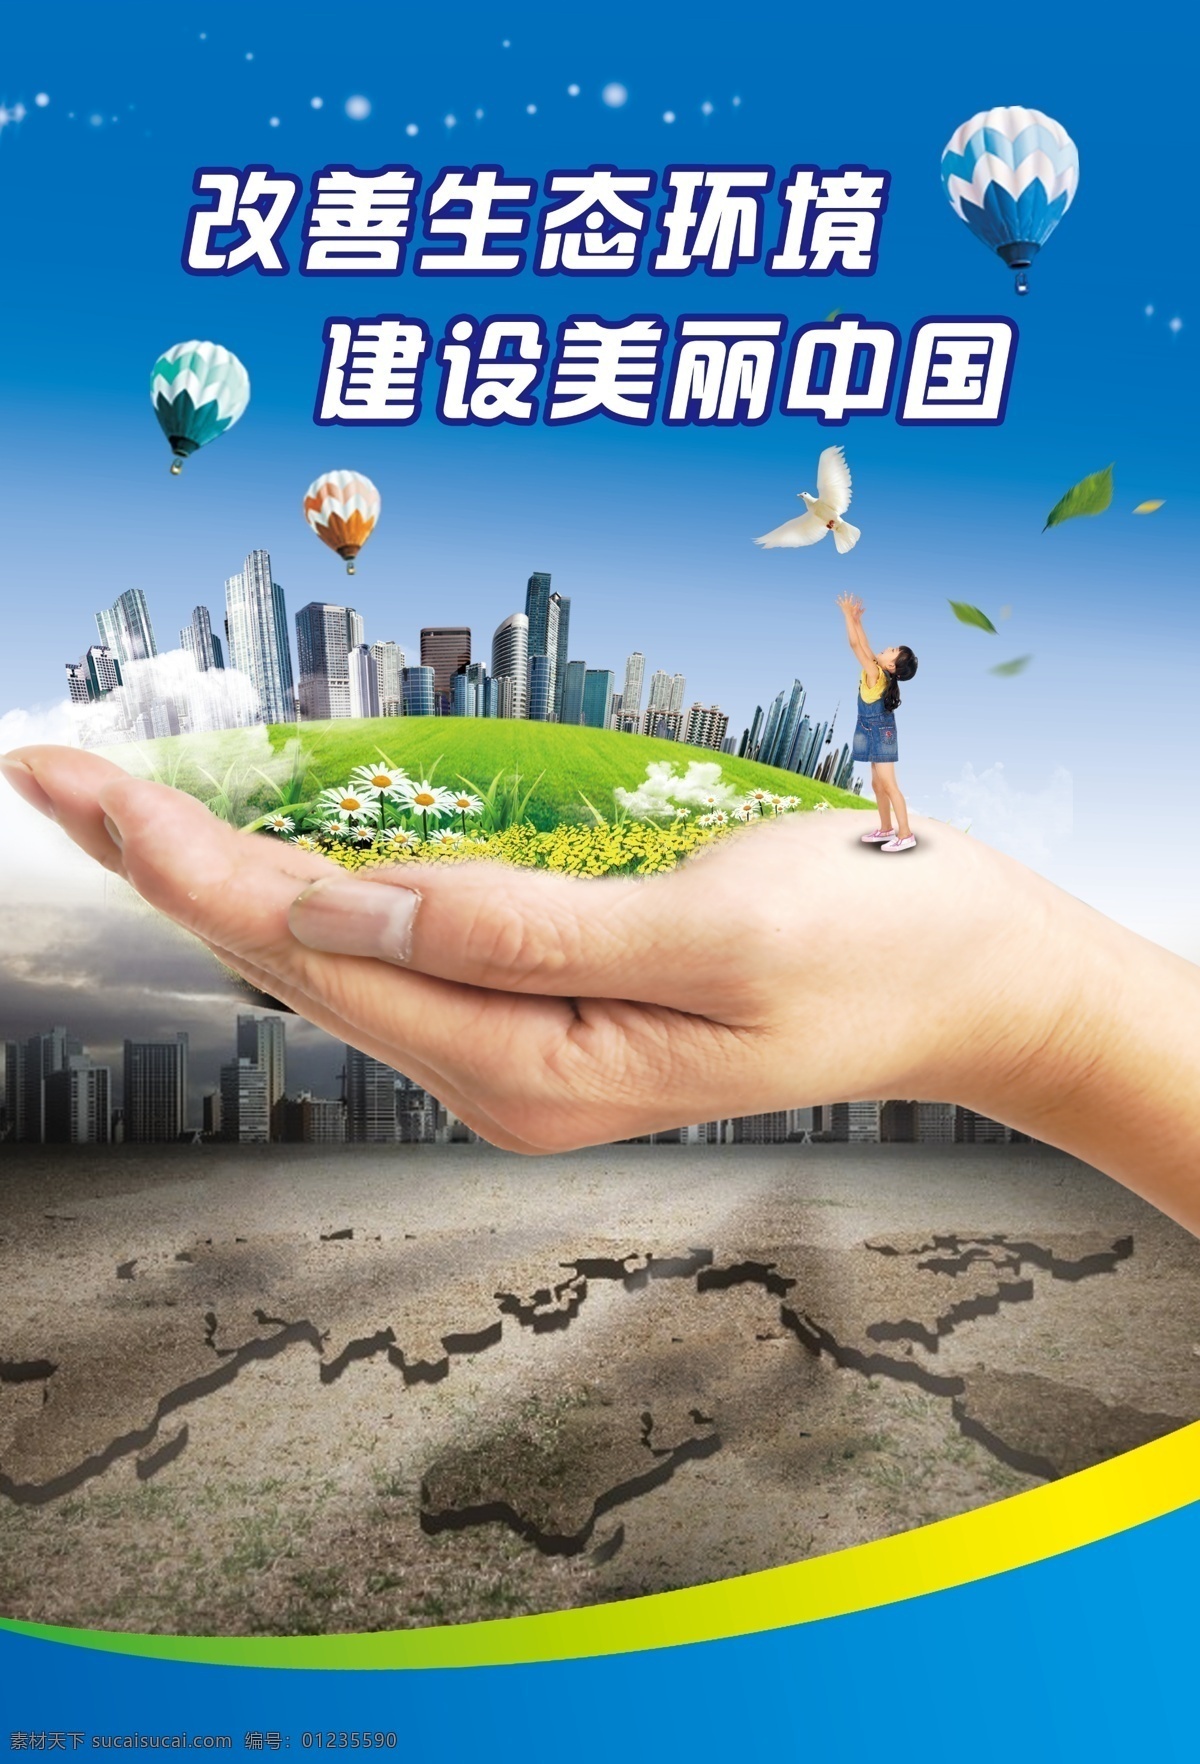 改善生态环境 建设美丽中国 低碳新生活 蓝色